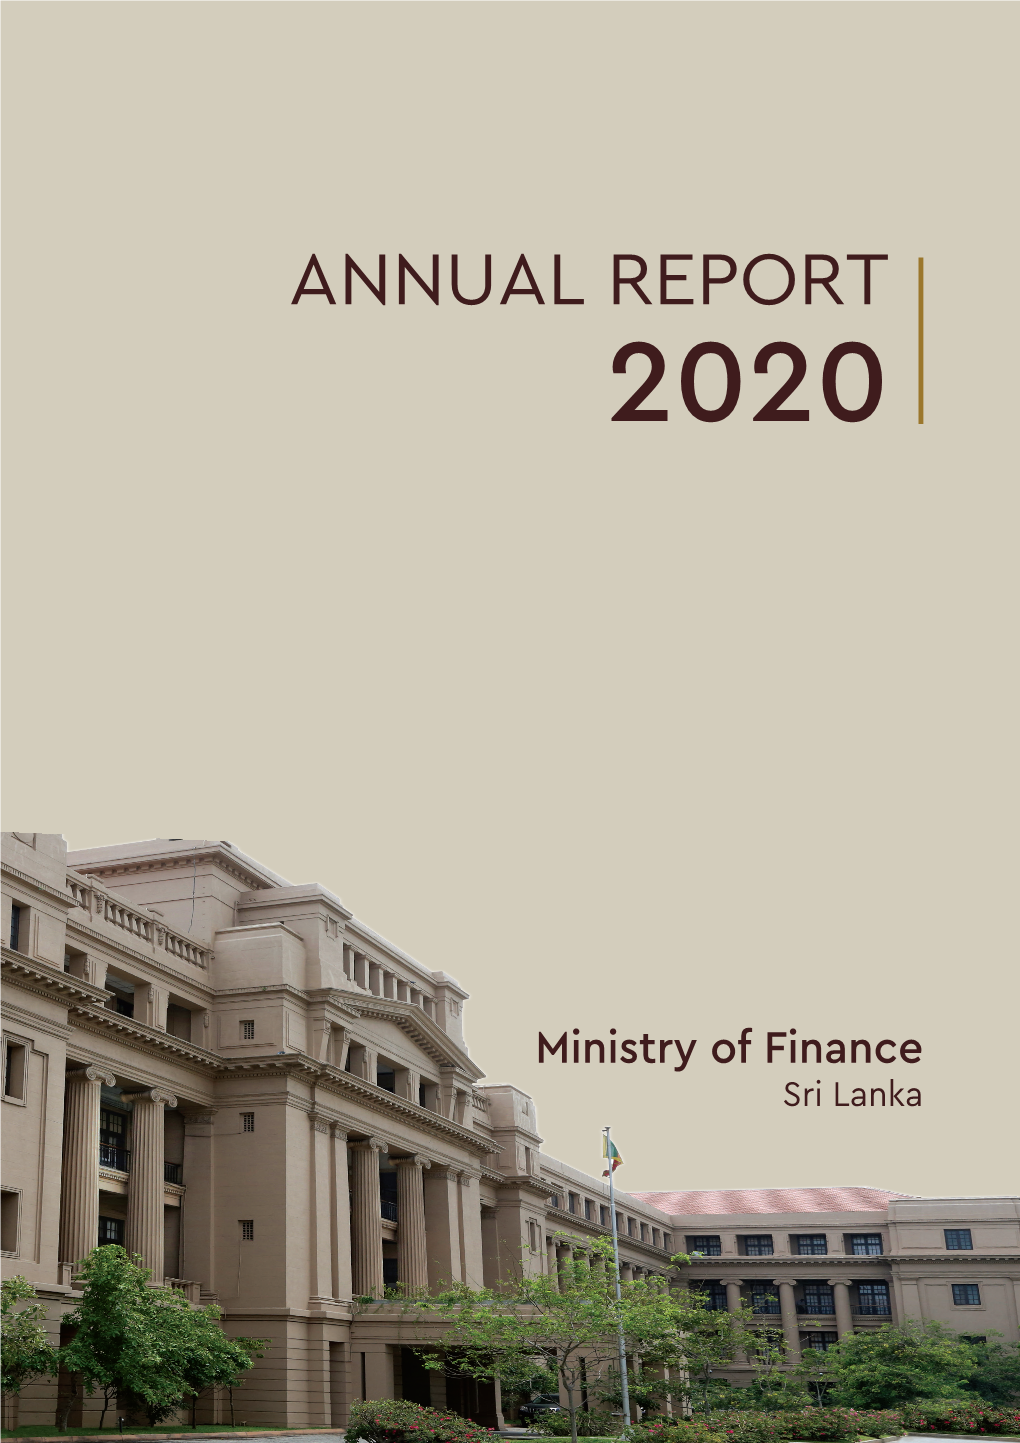 ANNUAL REPORT 2020 REPORT ANNUAL ANNUAL REPORT Ministry Offinance 2020 Sri Lanka